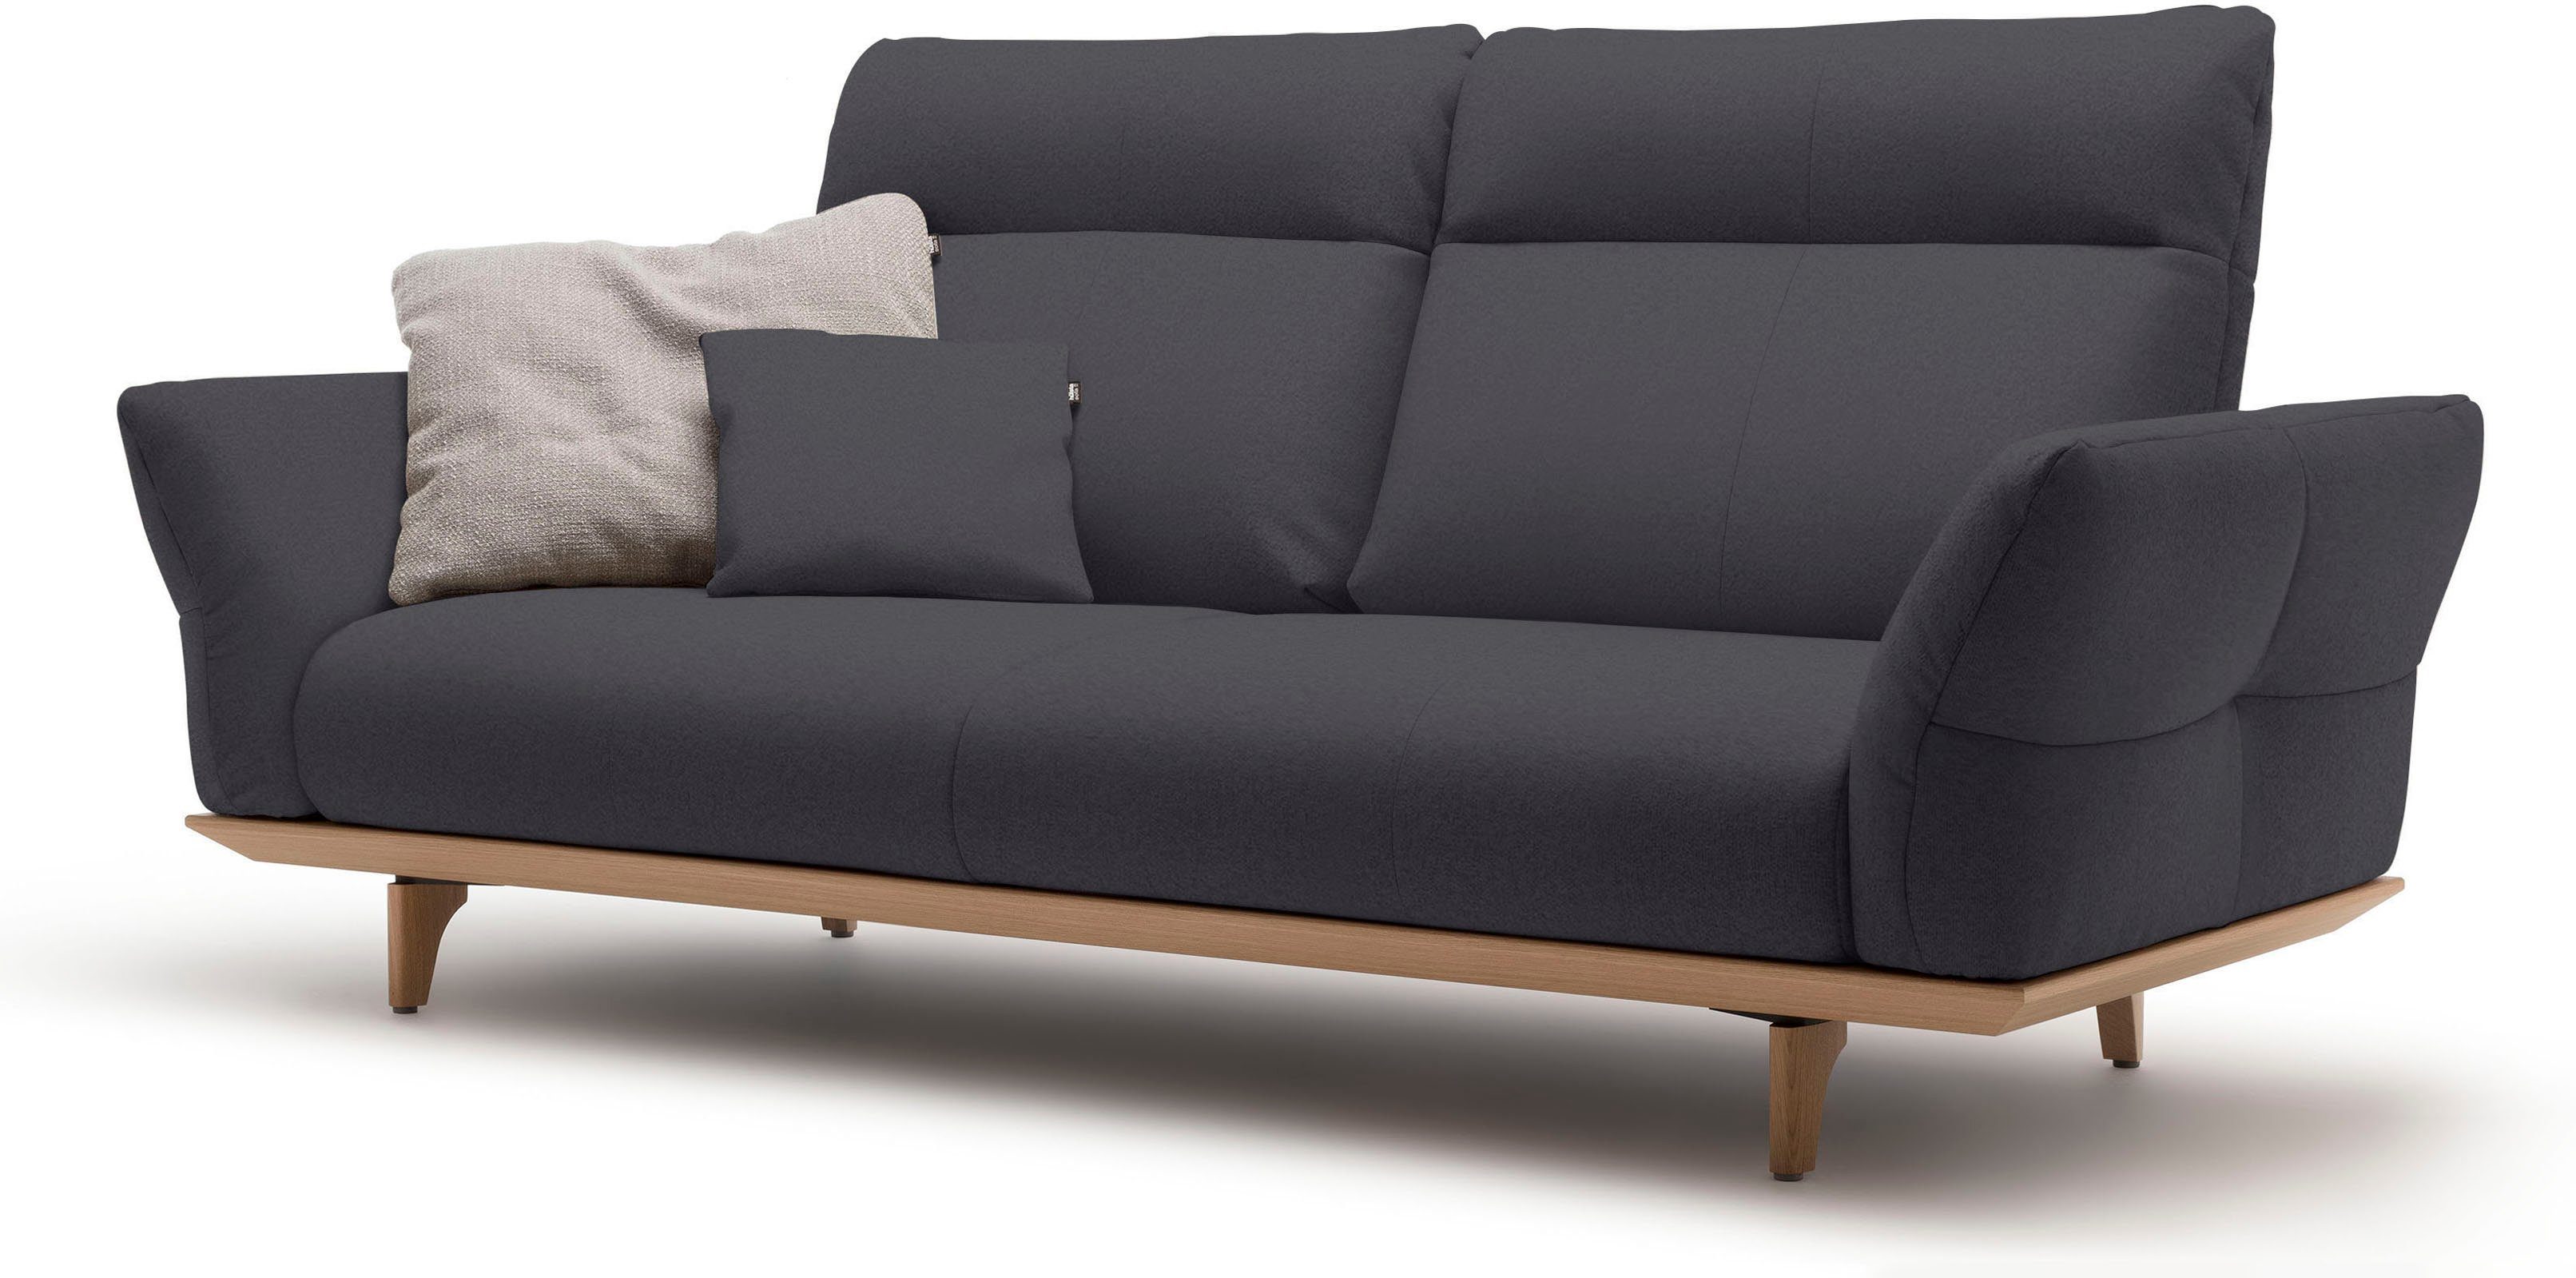 3-Sitzer Sockel hülsta sofa Breite Füße Eiche hs.460, in Eiche, natur, 208 cm